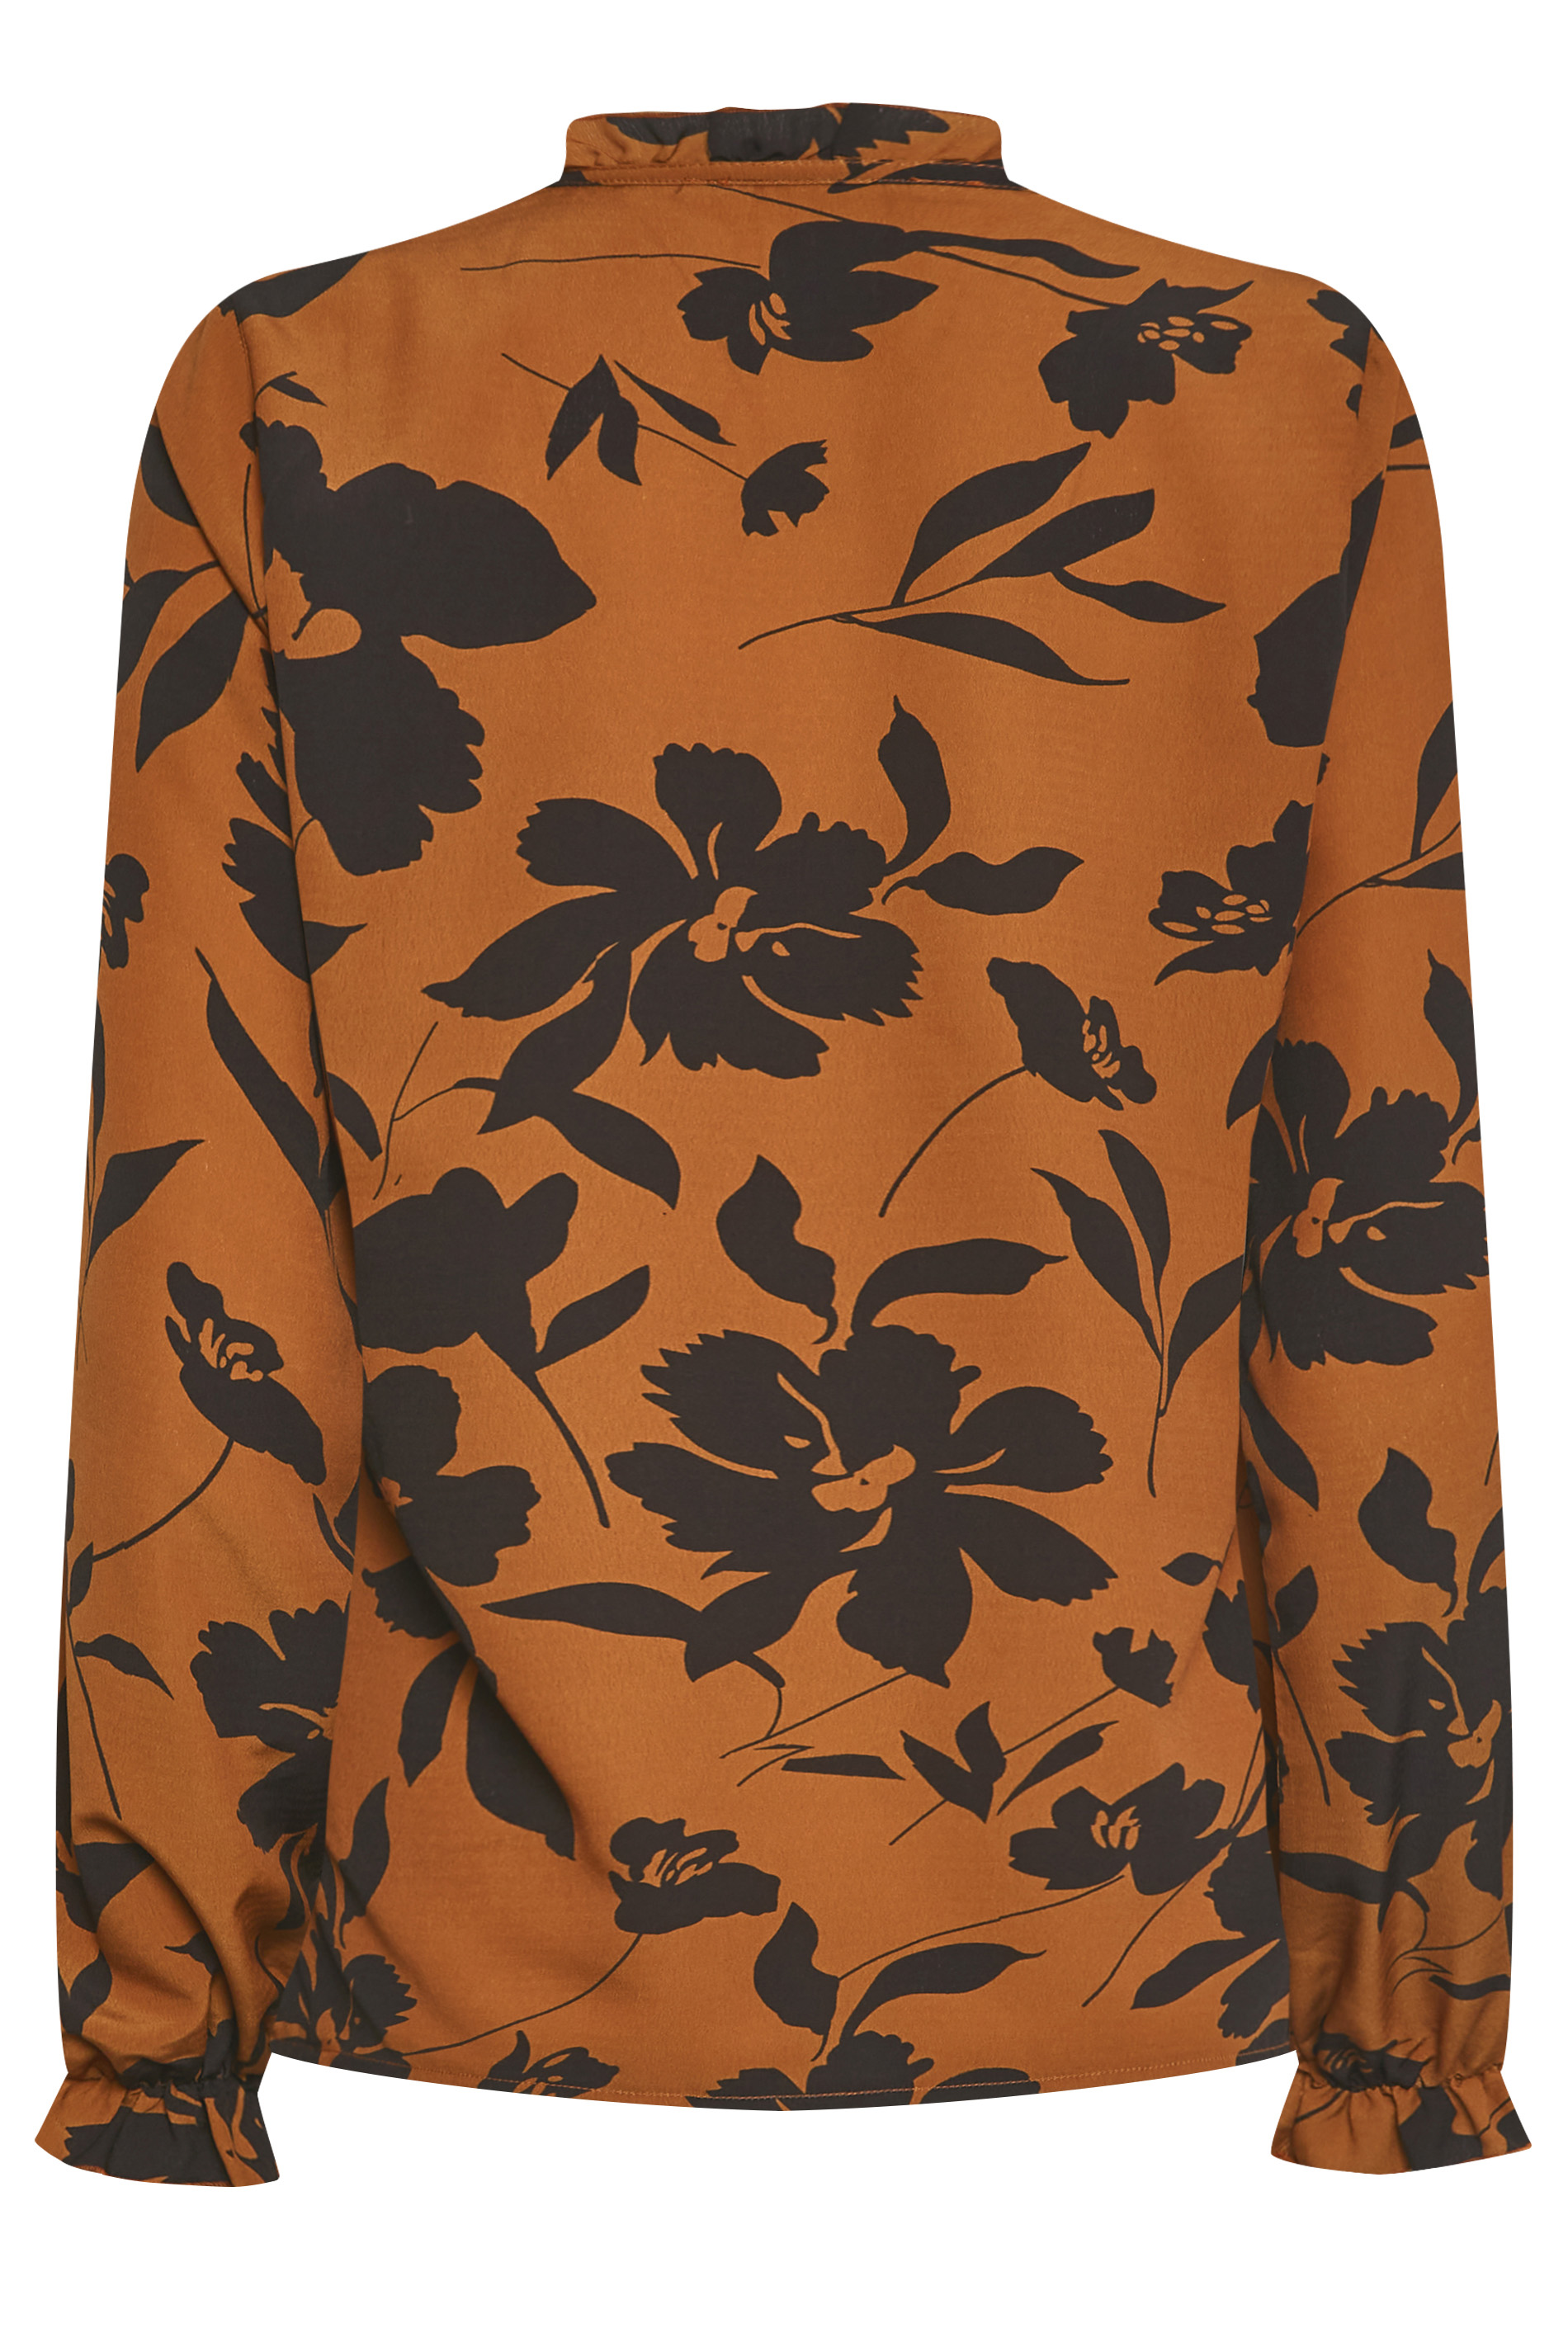 M&Co Brown Floral Print Tie Neck Blouse | M&Co